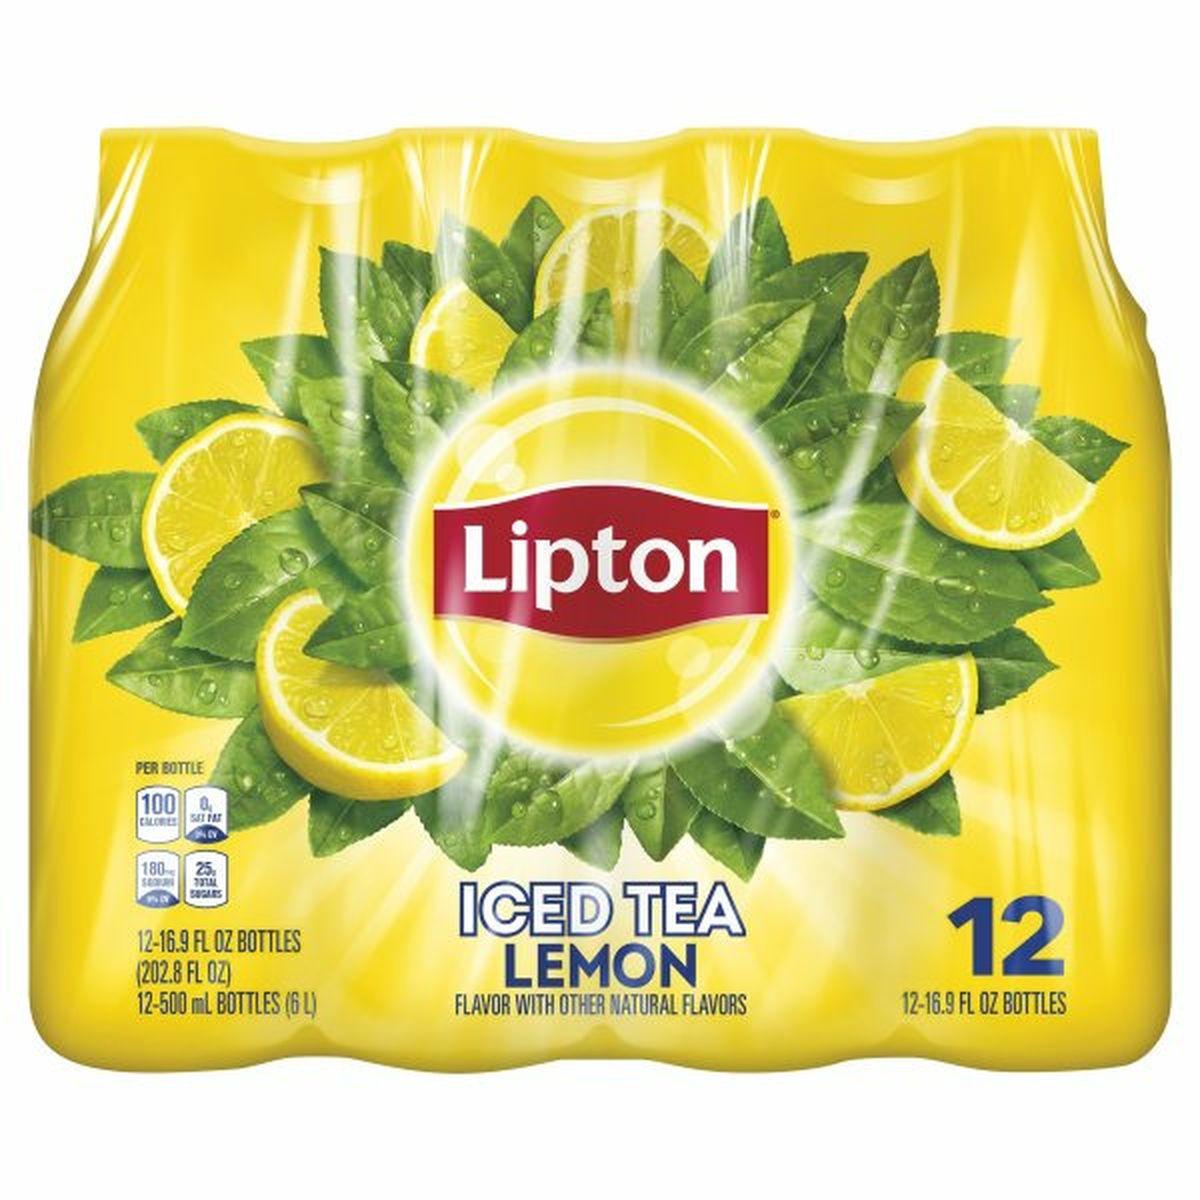 Calories in Lipton Iced Tea, Lemon